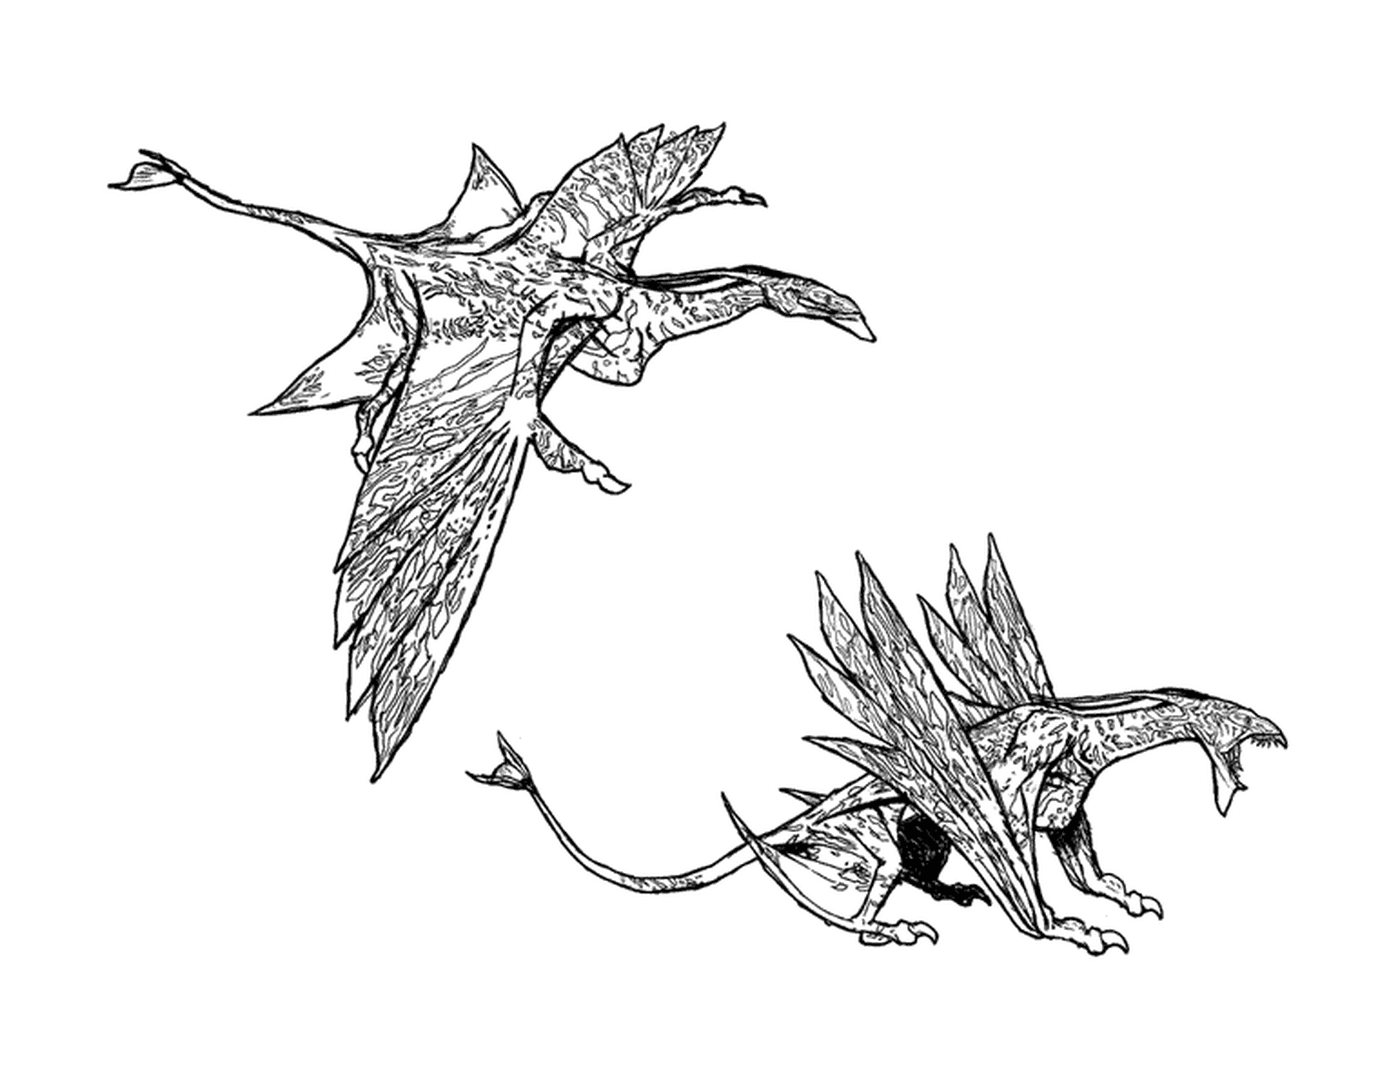  Два рисунка распростертого дракона 